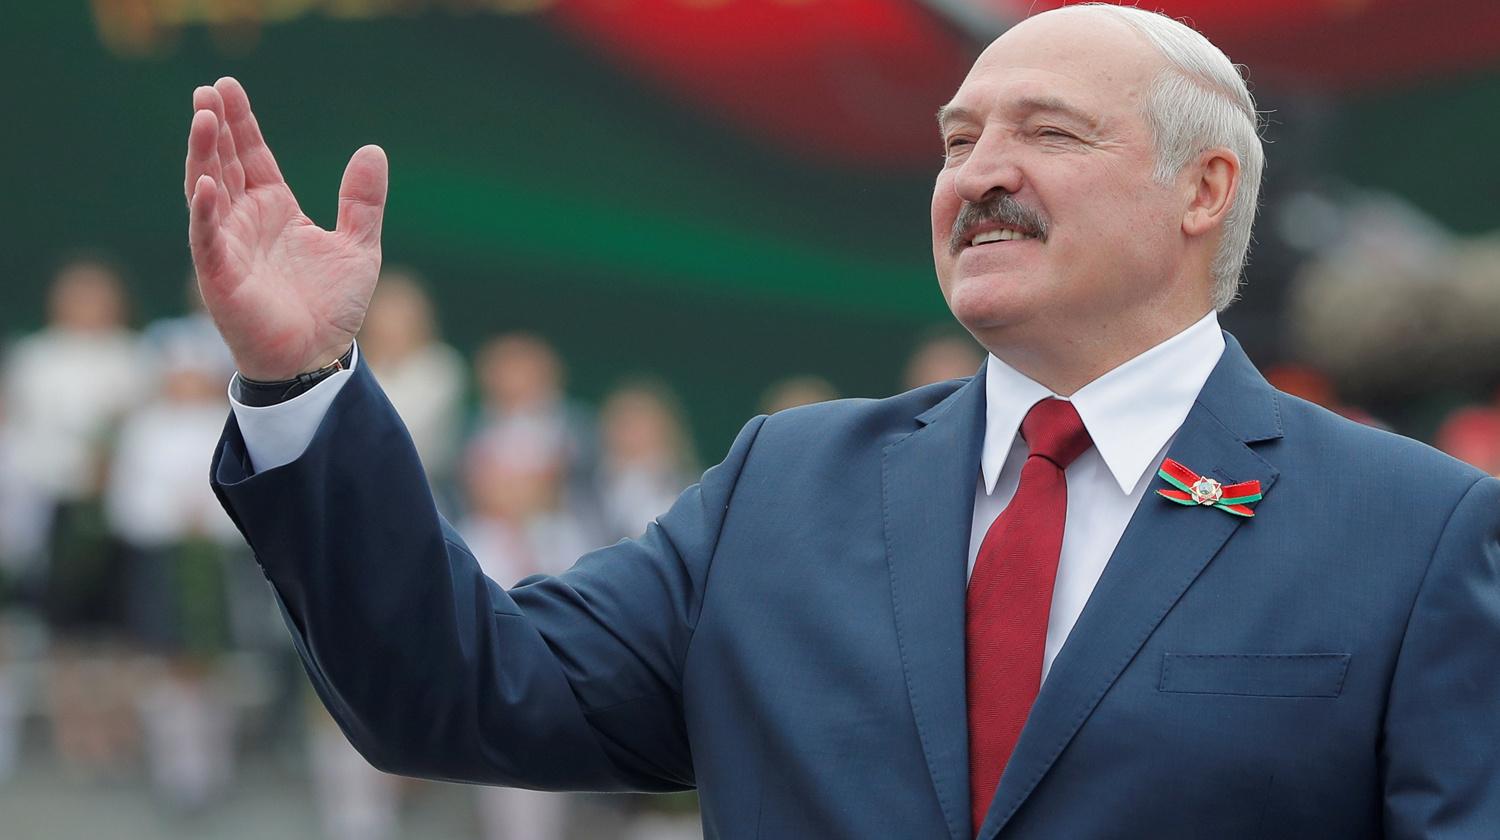 Le président bélarusse Alexandre Loukachenko